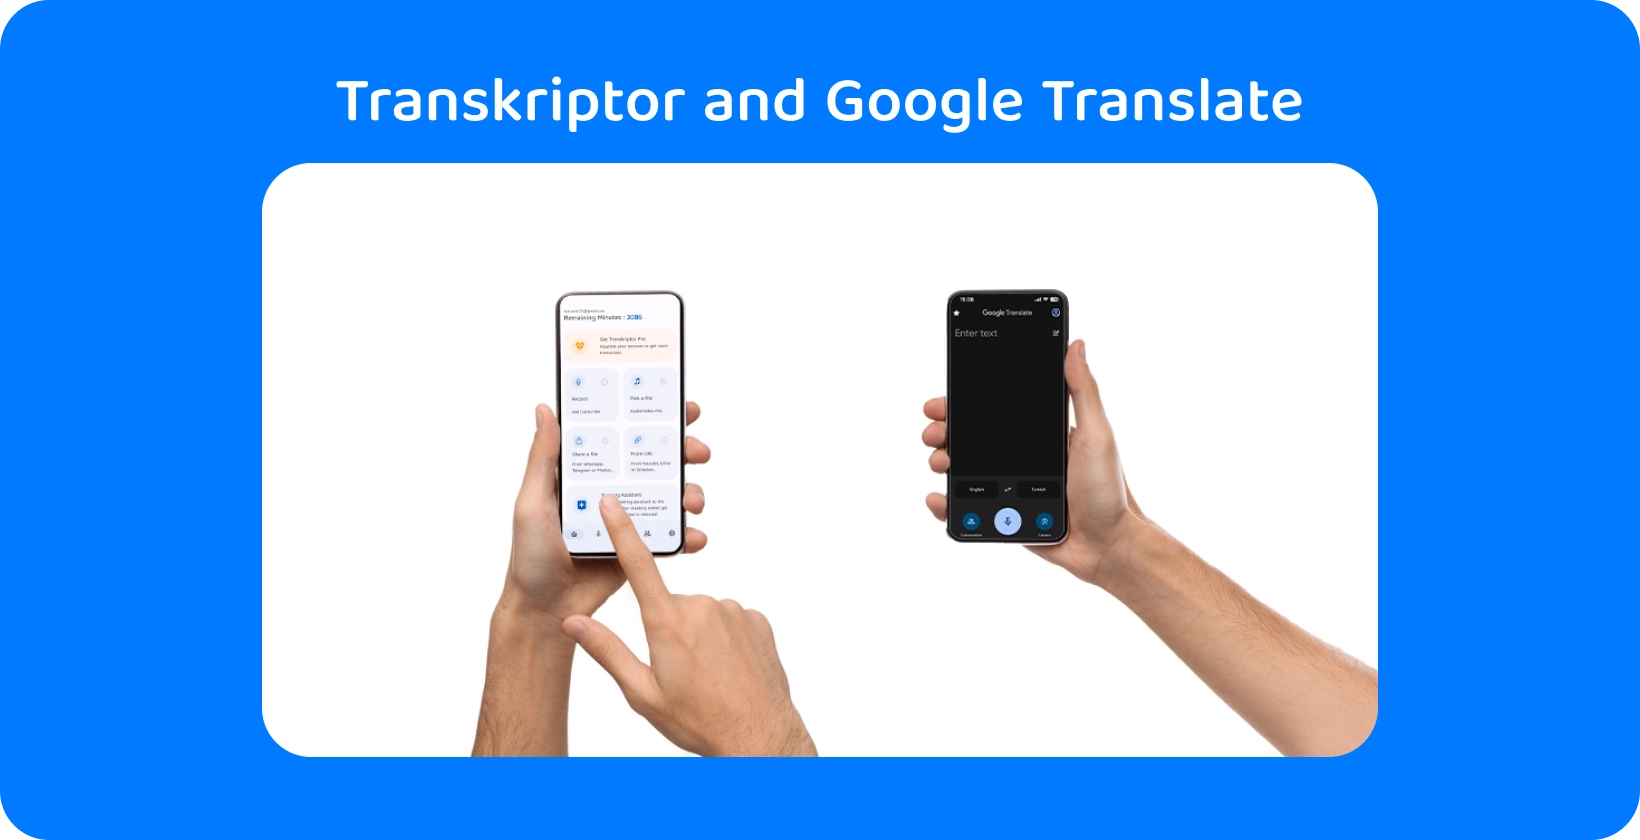 Dvi rankos, laikančios išmaniuosius telefonus su Transkriptor ir Google "Translate", demonstruojančios garso transkripciją ir vertimą.